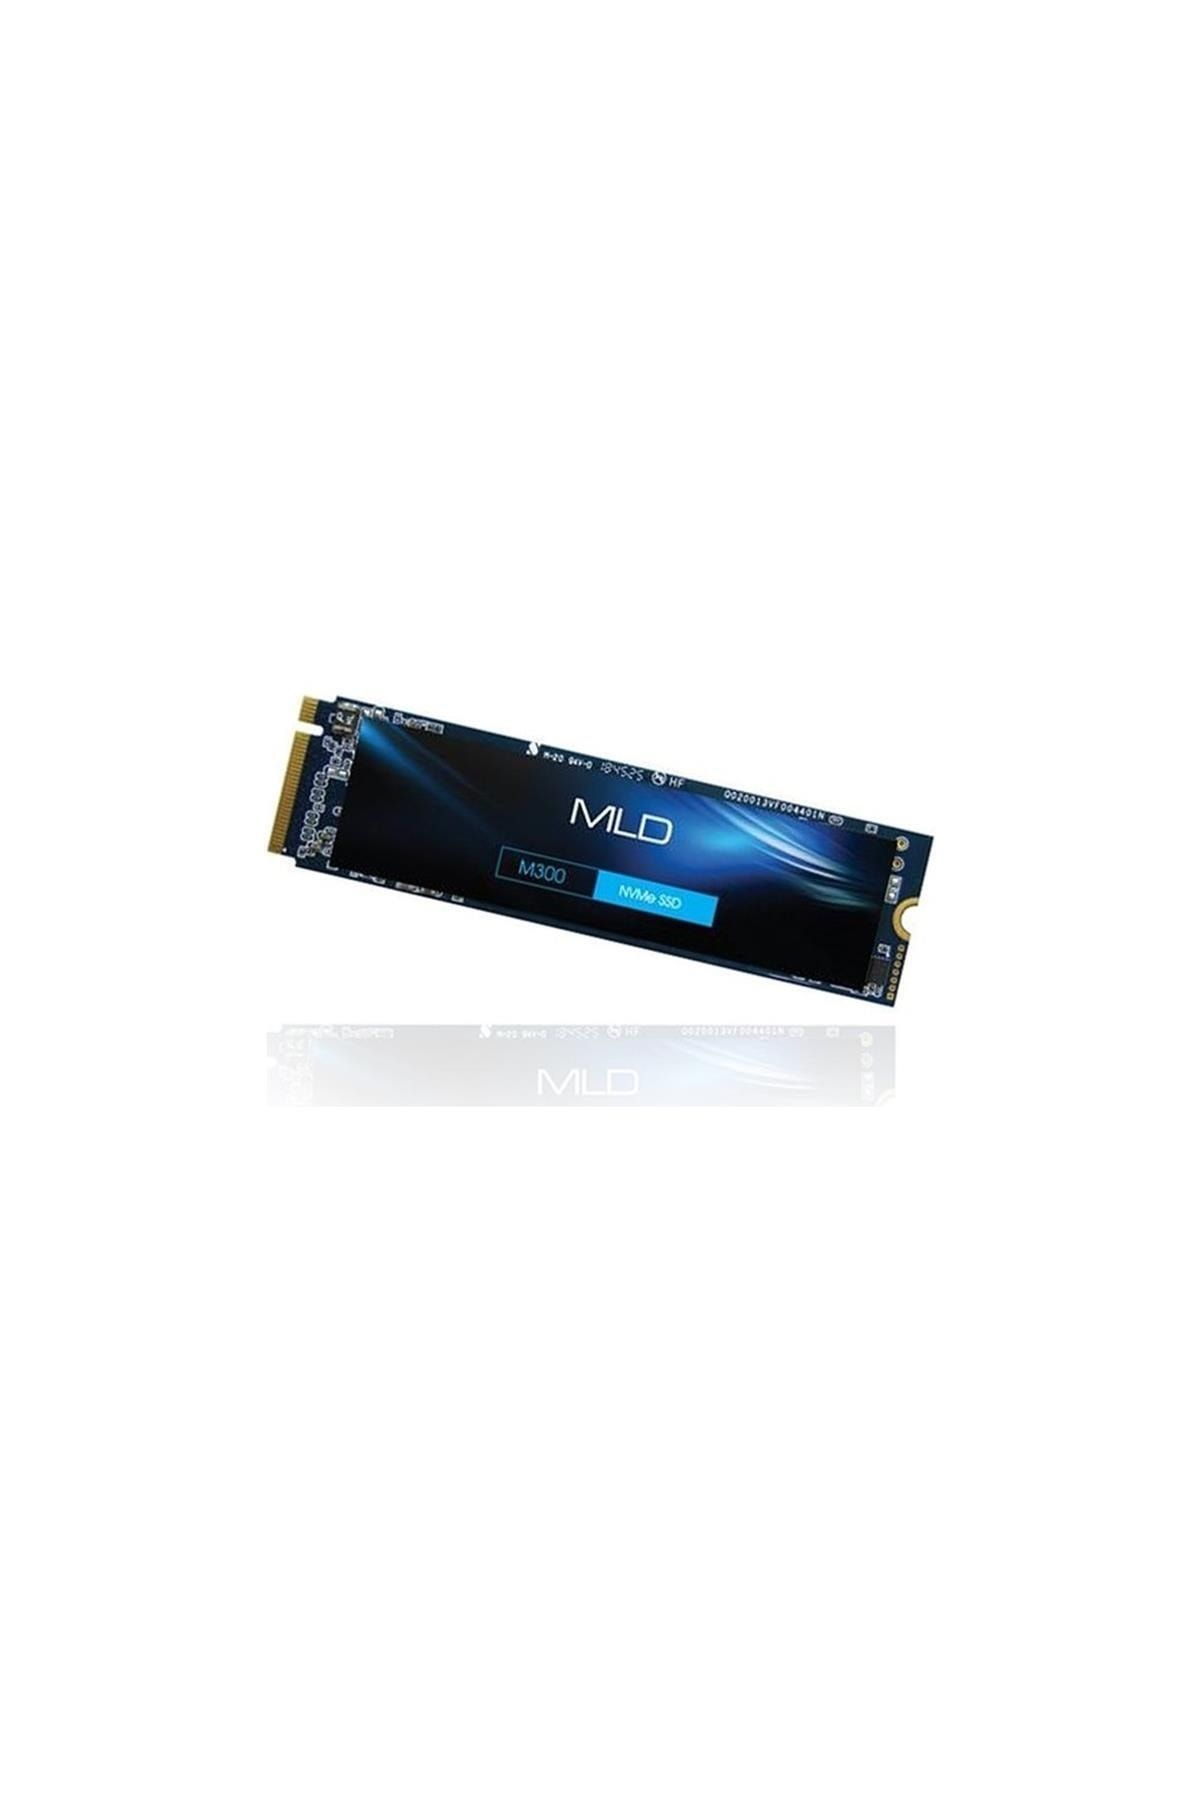 mld SSD-MLD 500 GB M300 MLD22M300P13-500 M.2 PCI-EXPRESS 3.0 SSD